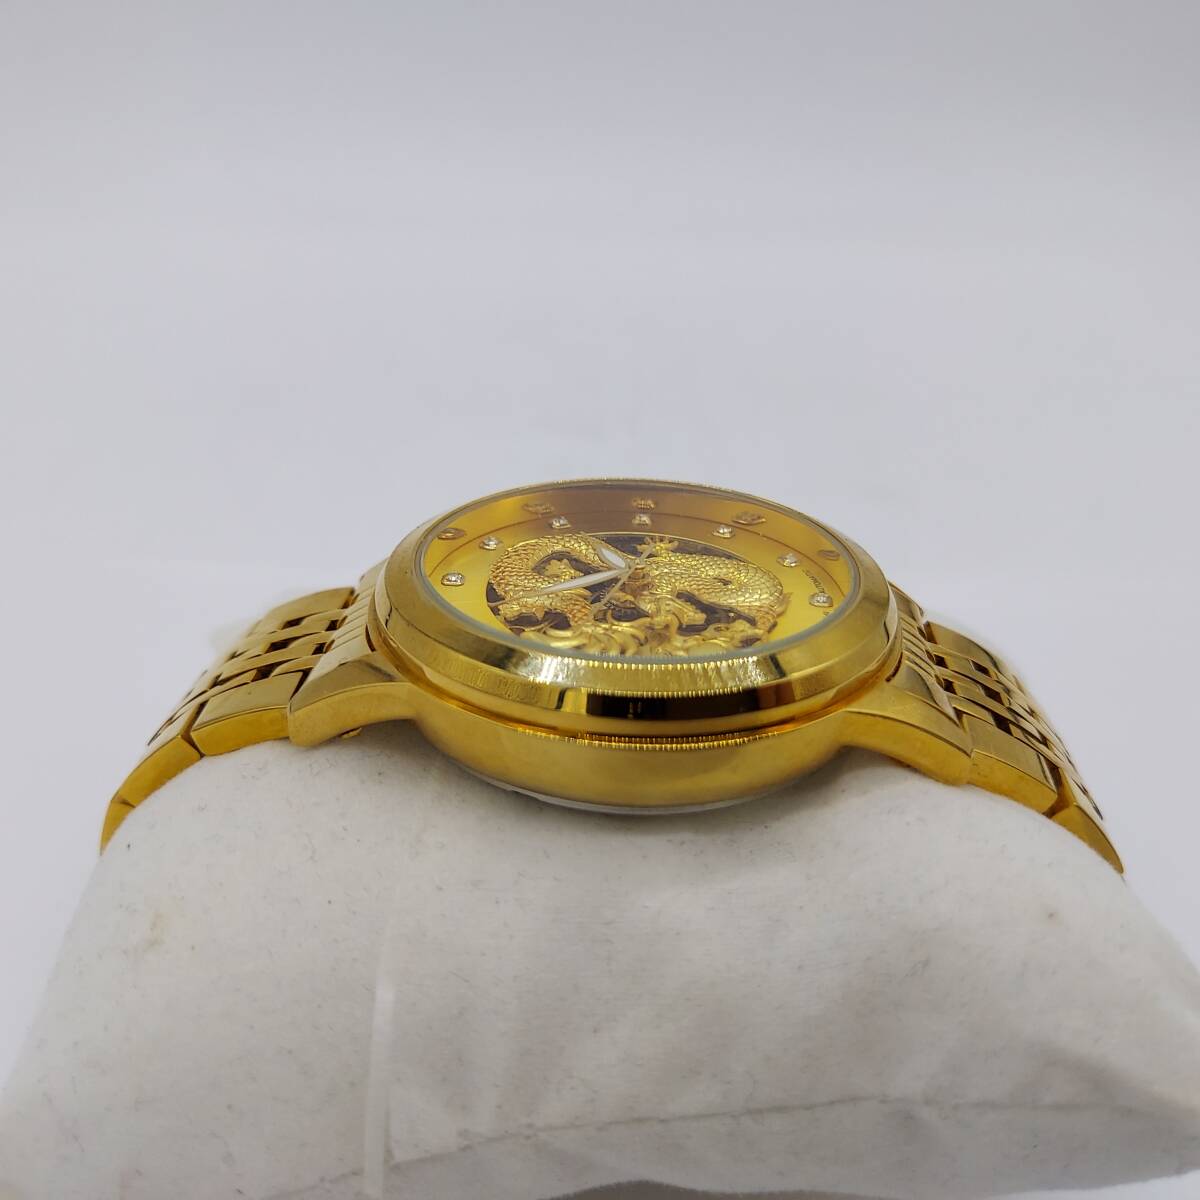 [ работа товар ] Gold × Gold цвет дракон бог узор автоматический самозаводящиеся часы мужские наручные часы кейс koma есть (6287